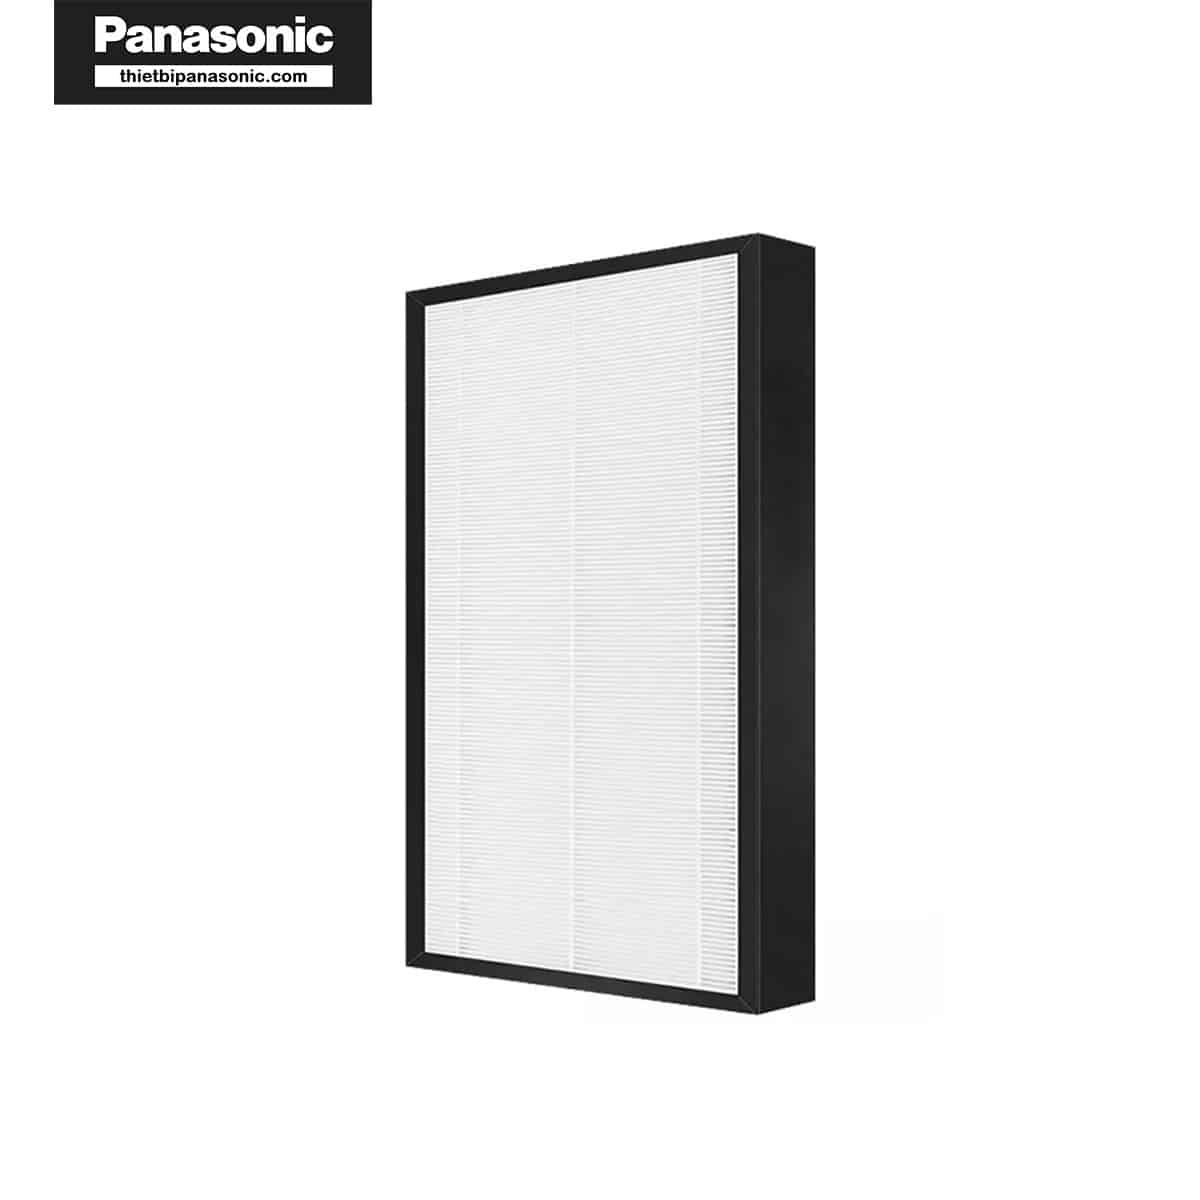 Mua Bộ lọc hỗn hợp cho Panasonic F-PXJ30 giá rẻ tại thietbipanasonic.com